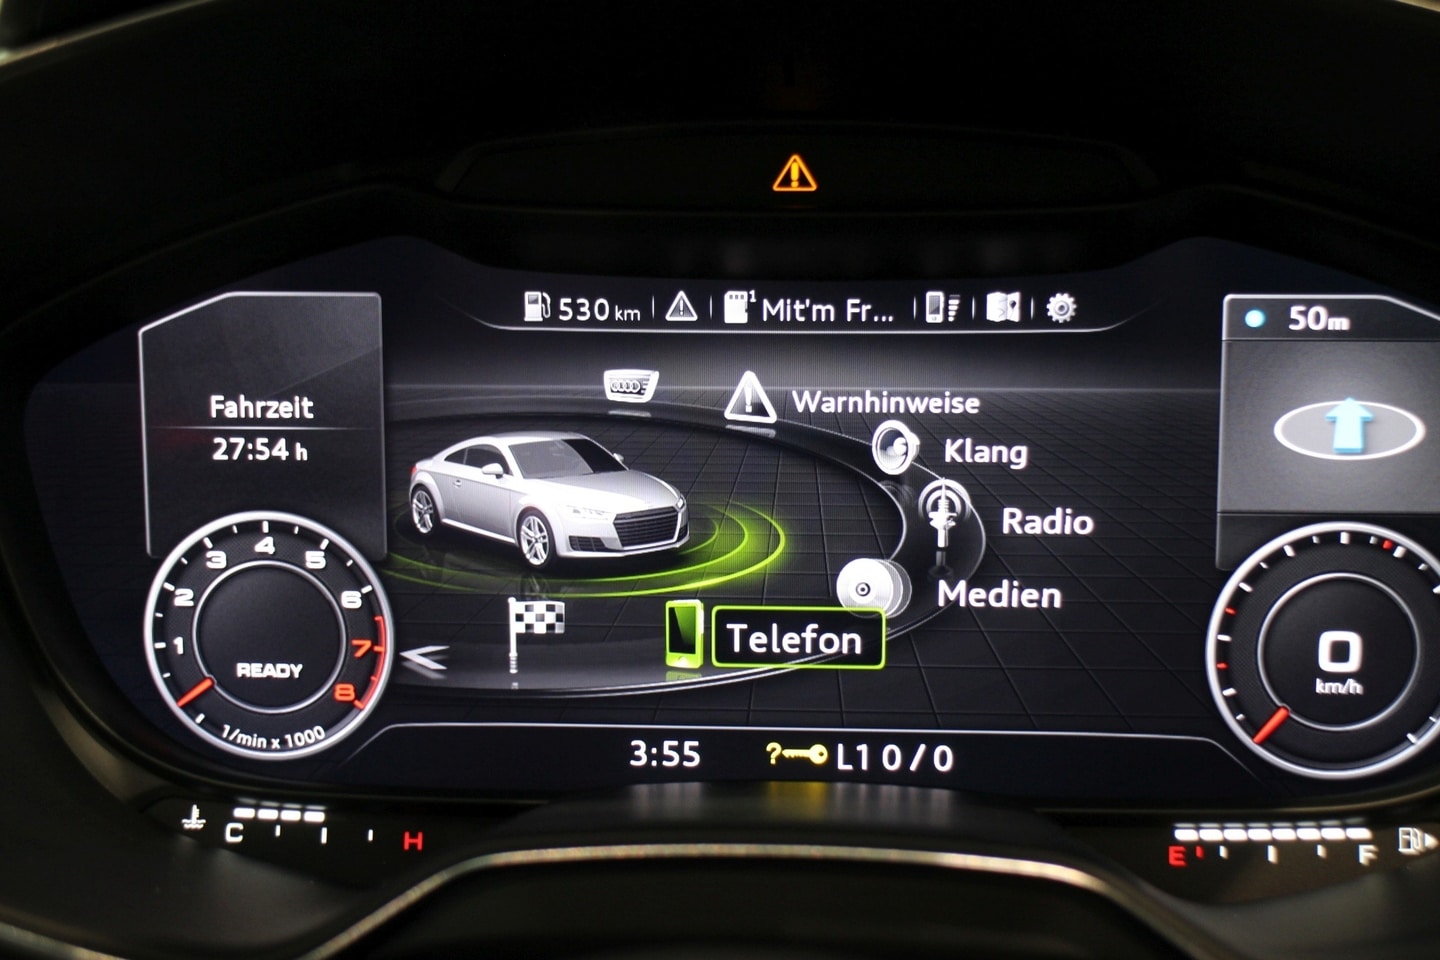 Ein Bild eines interaktiven digitalen Audi-Displays, das Motordrehzahl, Medienfunktionen und Navigationsinformationen anzeigt